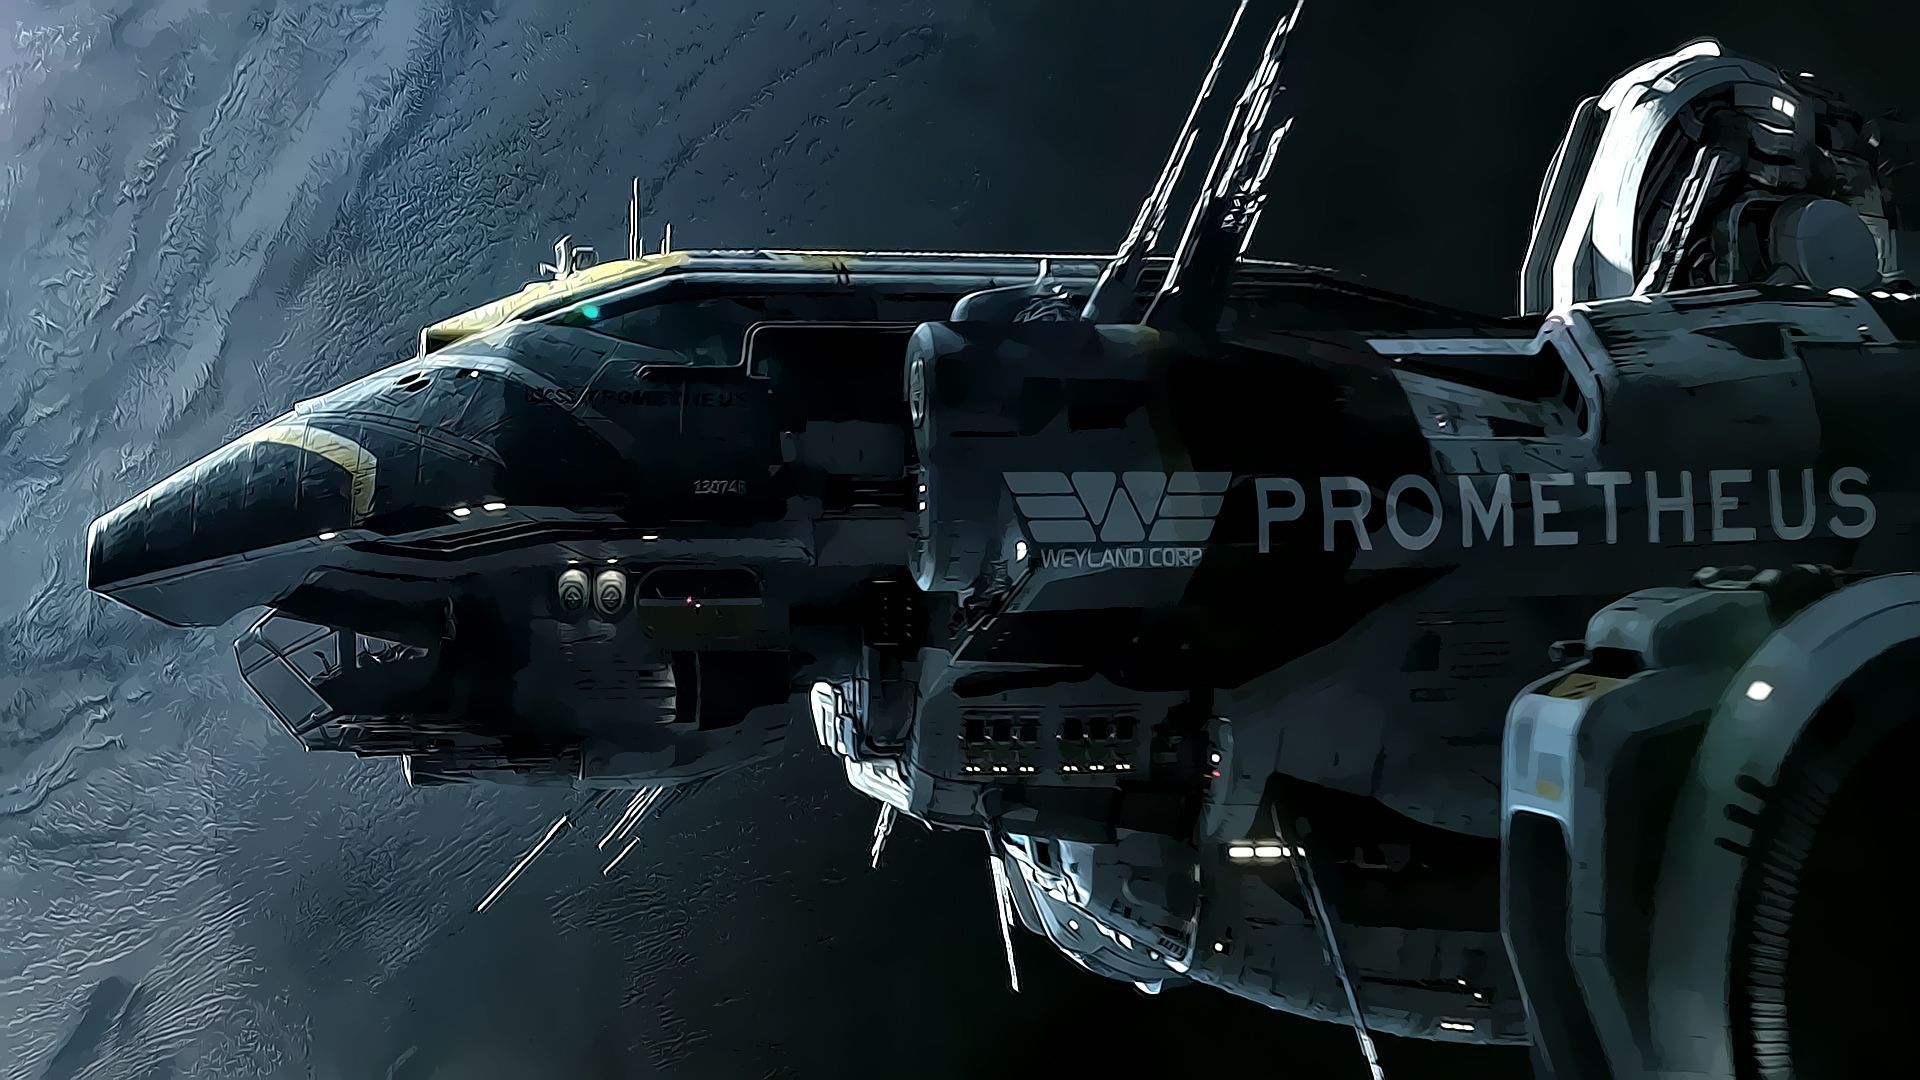 Movie Prometheus the Ship. Prometheus movie, Sci fi spaceships